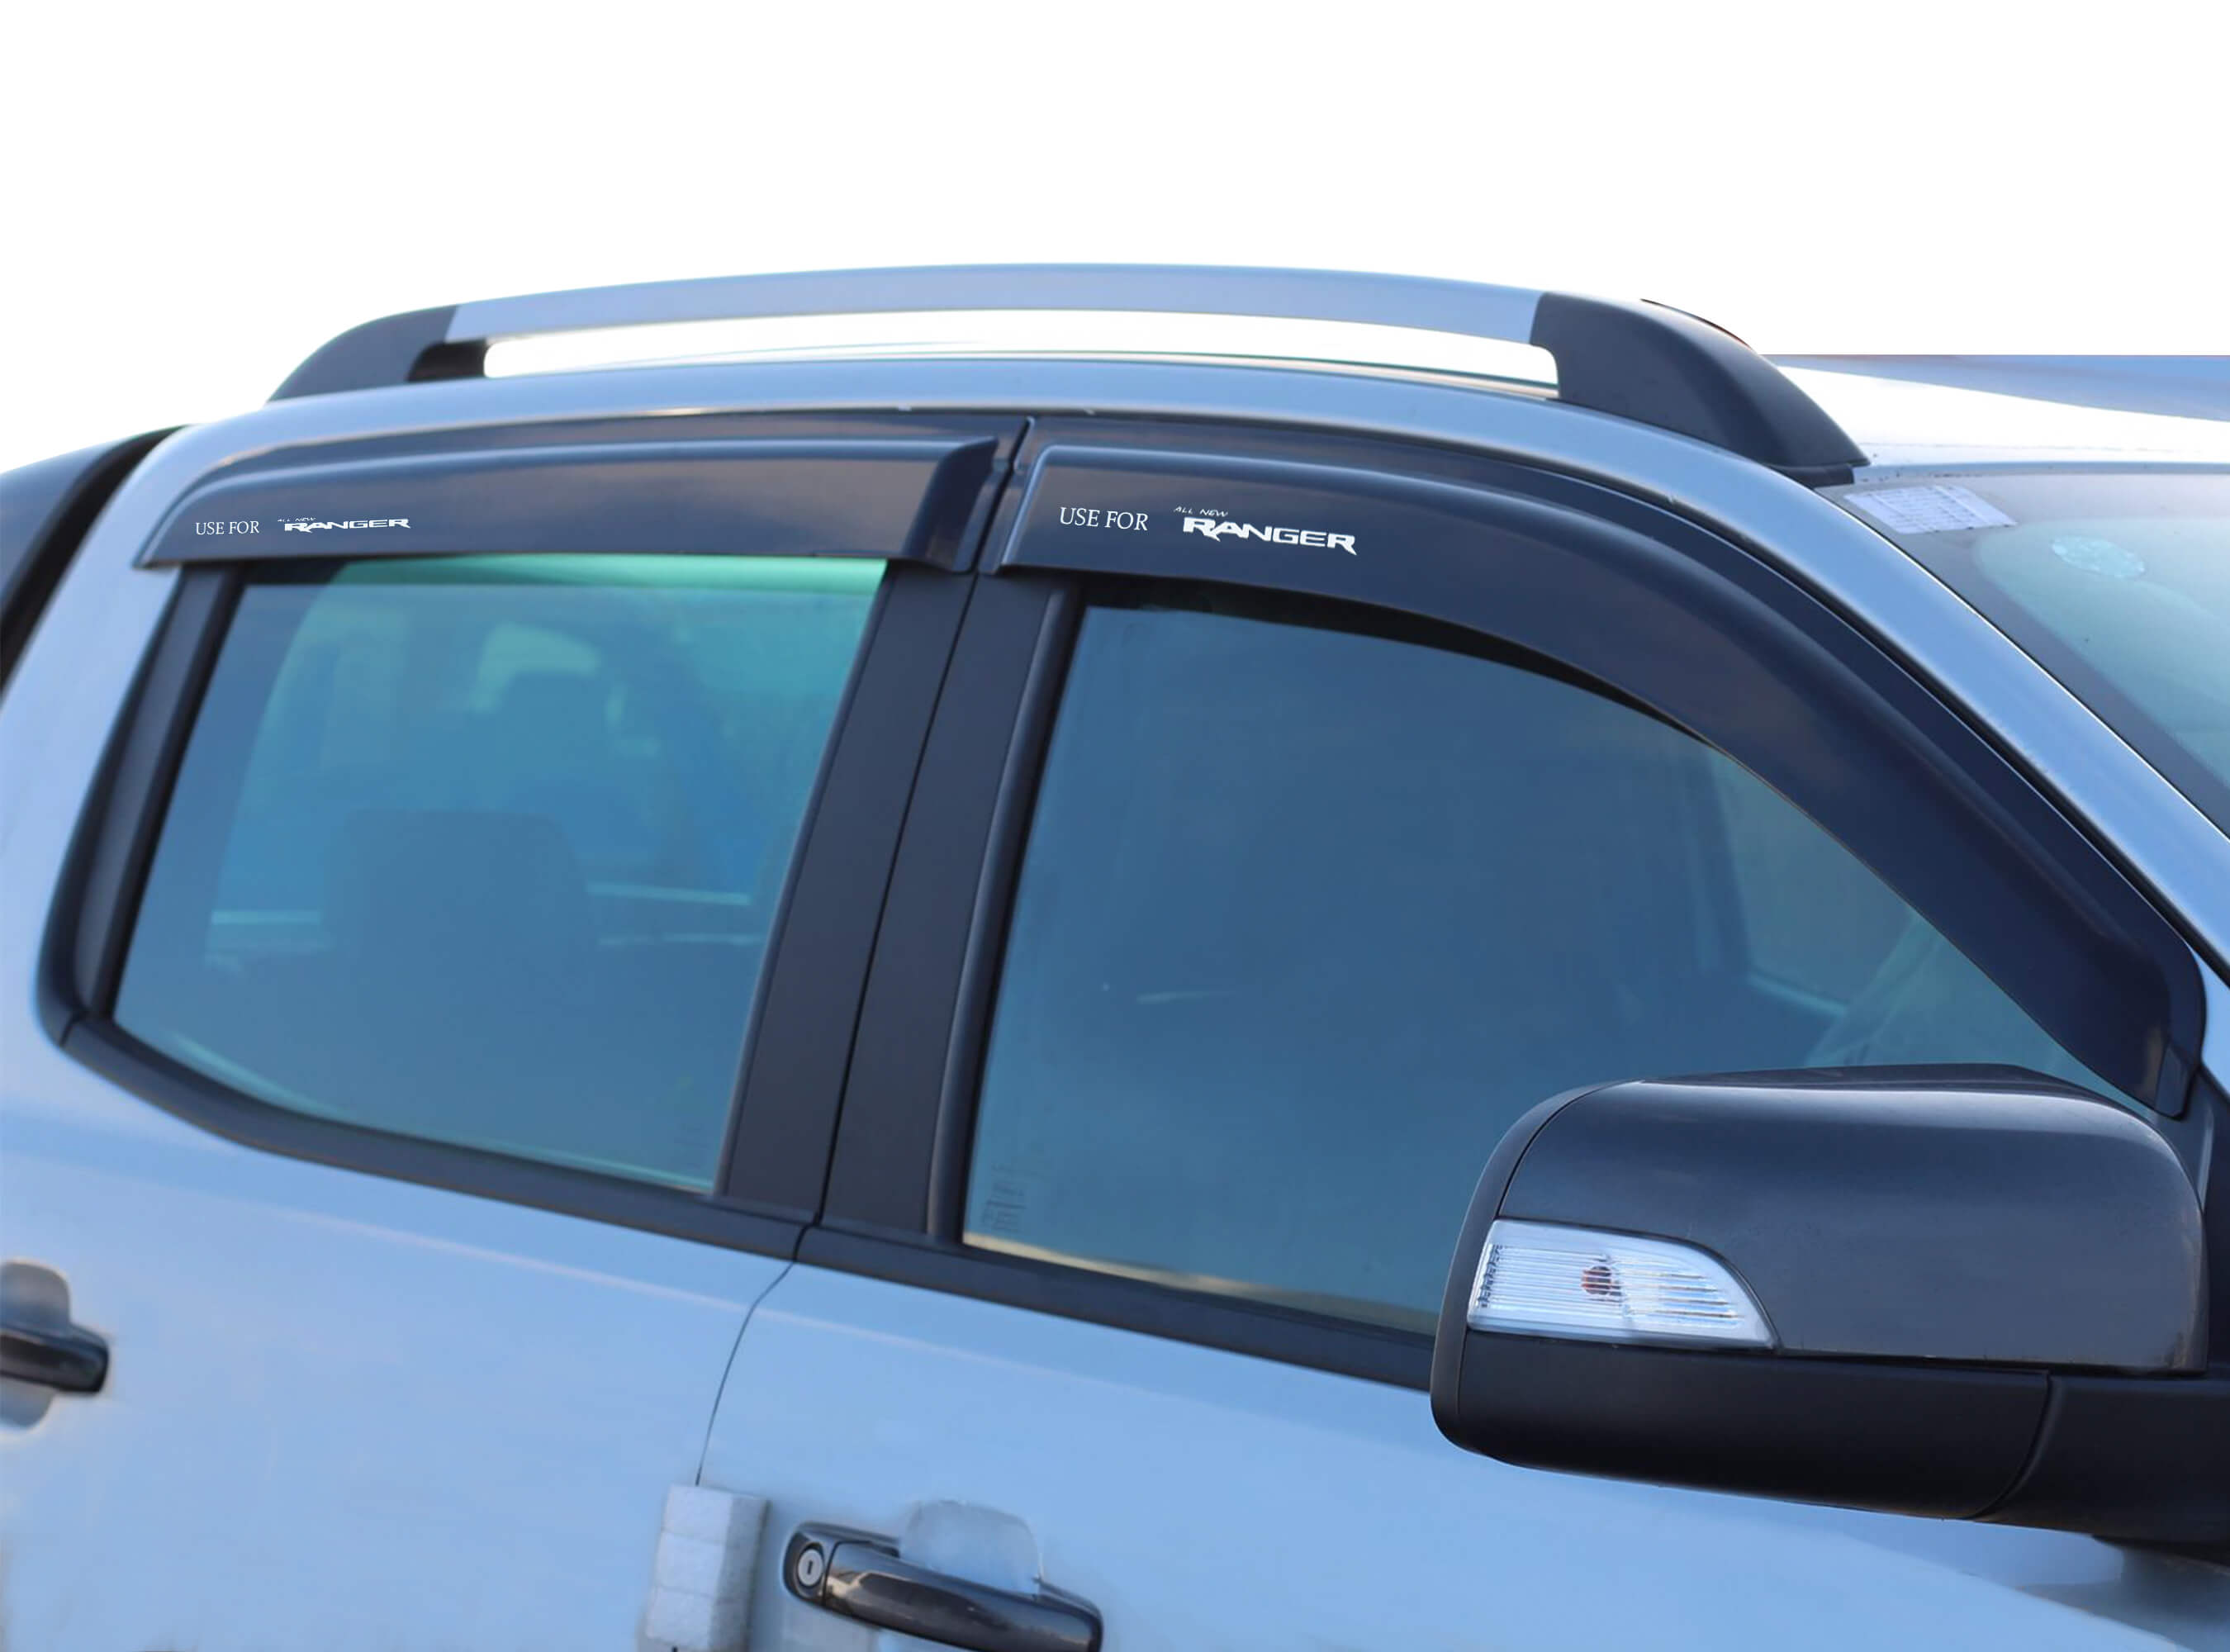 ADAPEY 4 Stück Auto Windabweiser Regenabweiser Für Ford Edge  2015-2018,Vorne Hinten Regenschutz Seitenfenster Sonnenschutz Deflektor  Zubehör